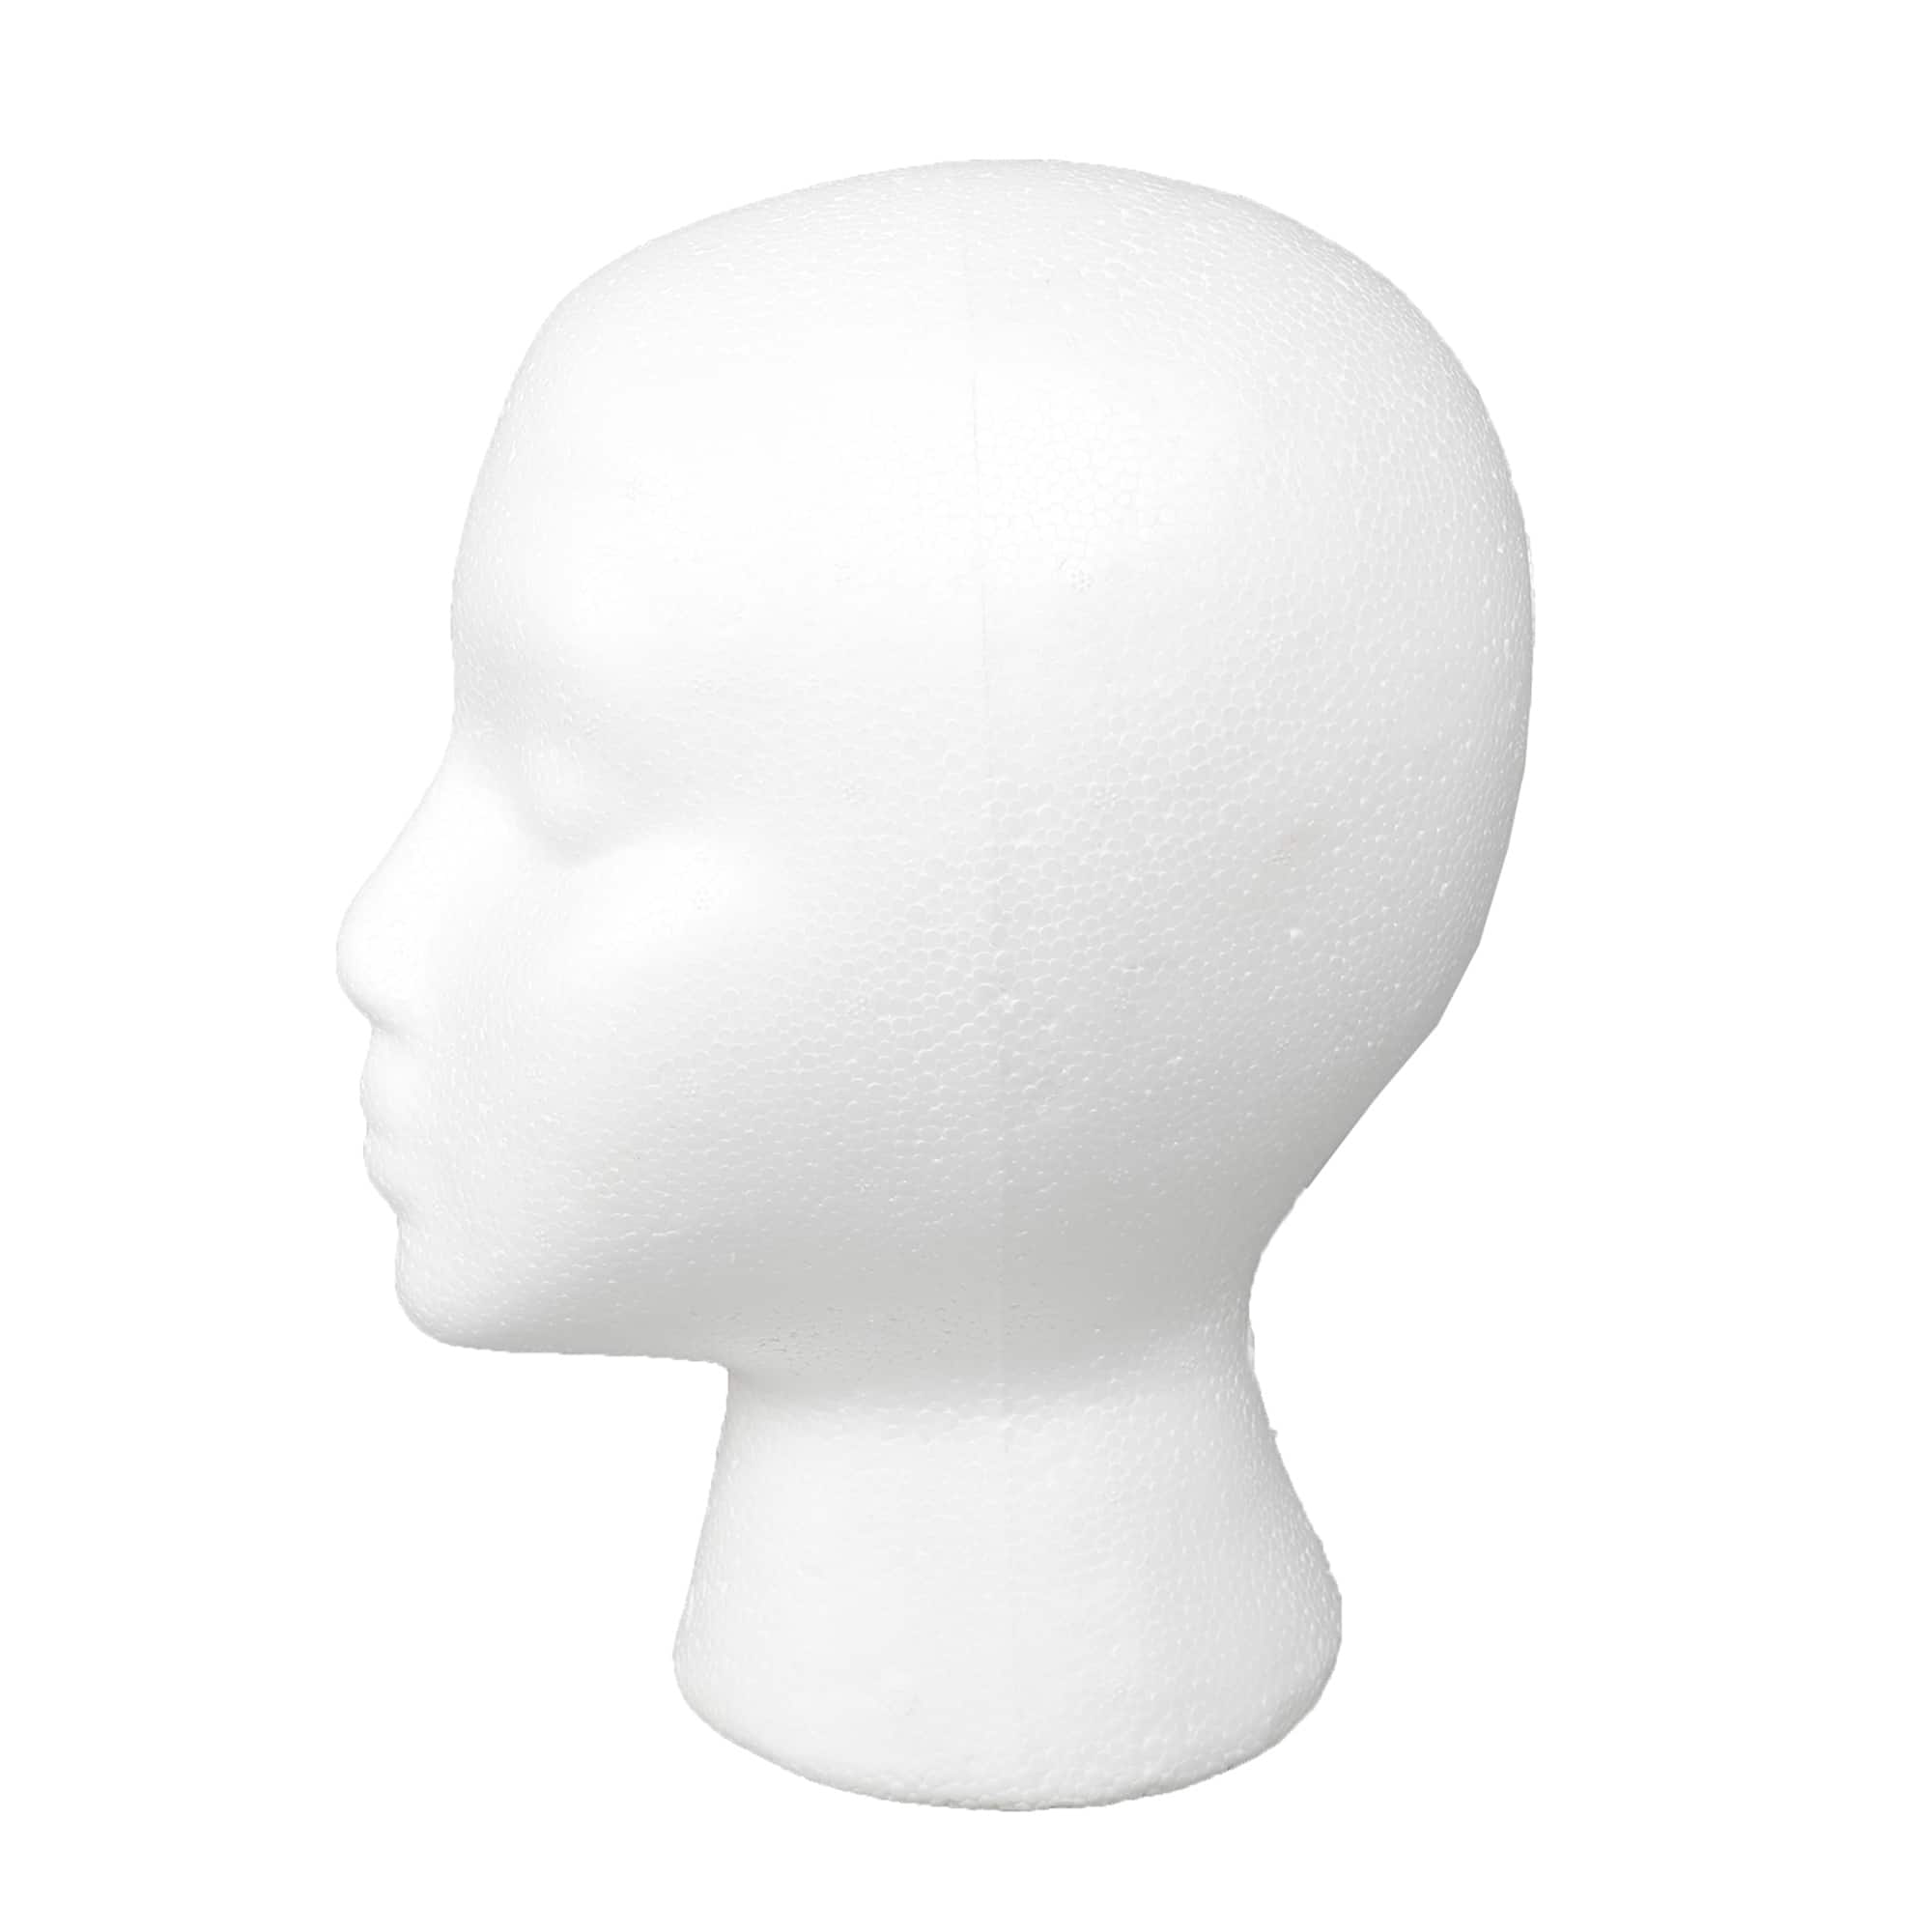 Wig Head Mannequin - Mannequin Head Stand, Styro foam Head